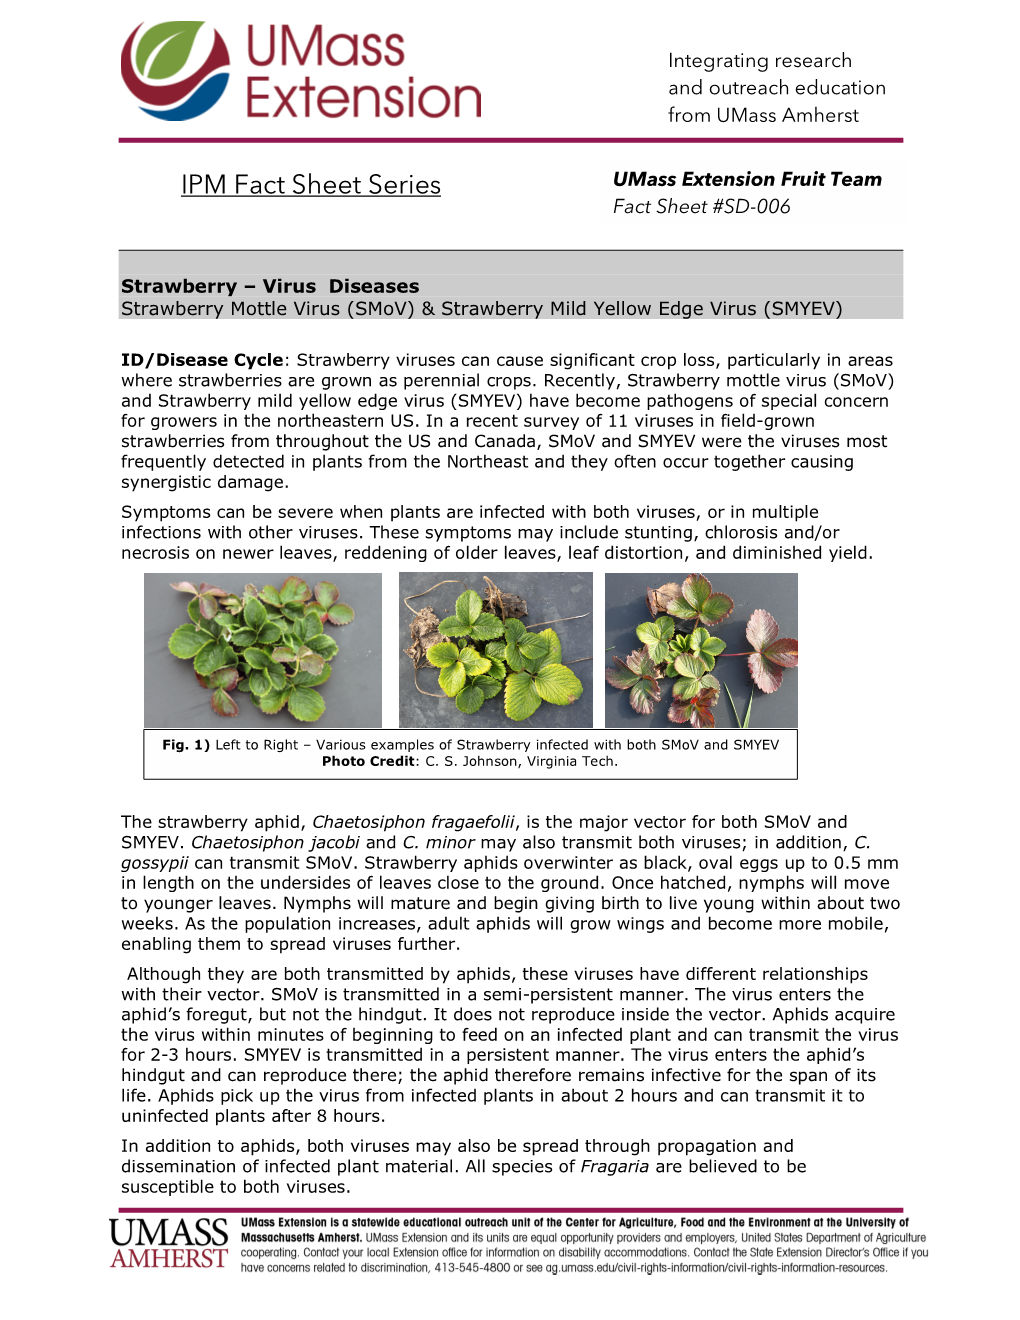 IPM Fact Sheet Series Umass Extension Fruit Team Fact Sheet #SD-006